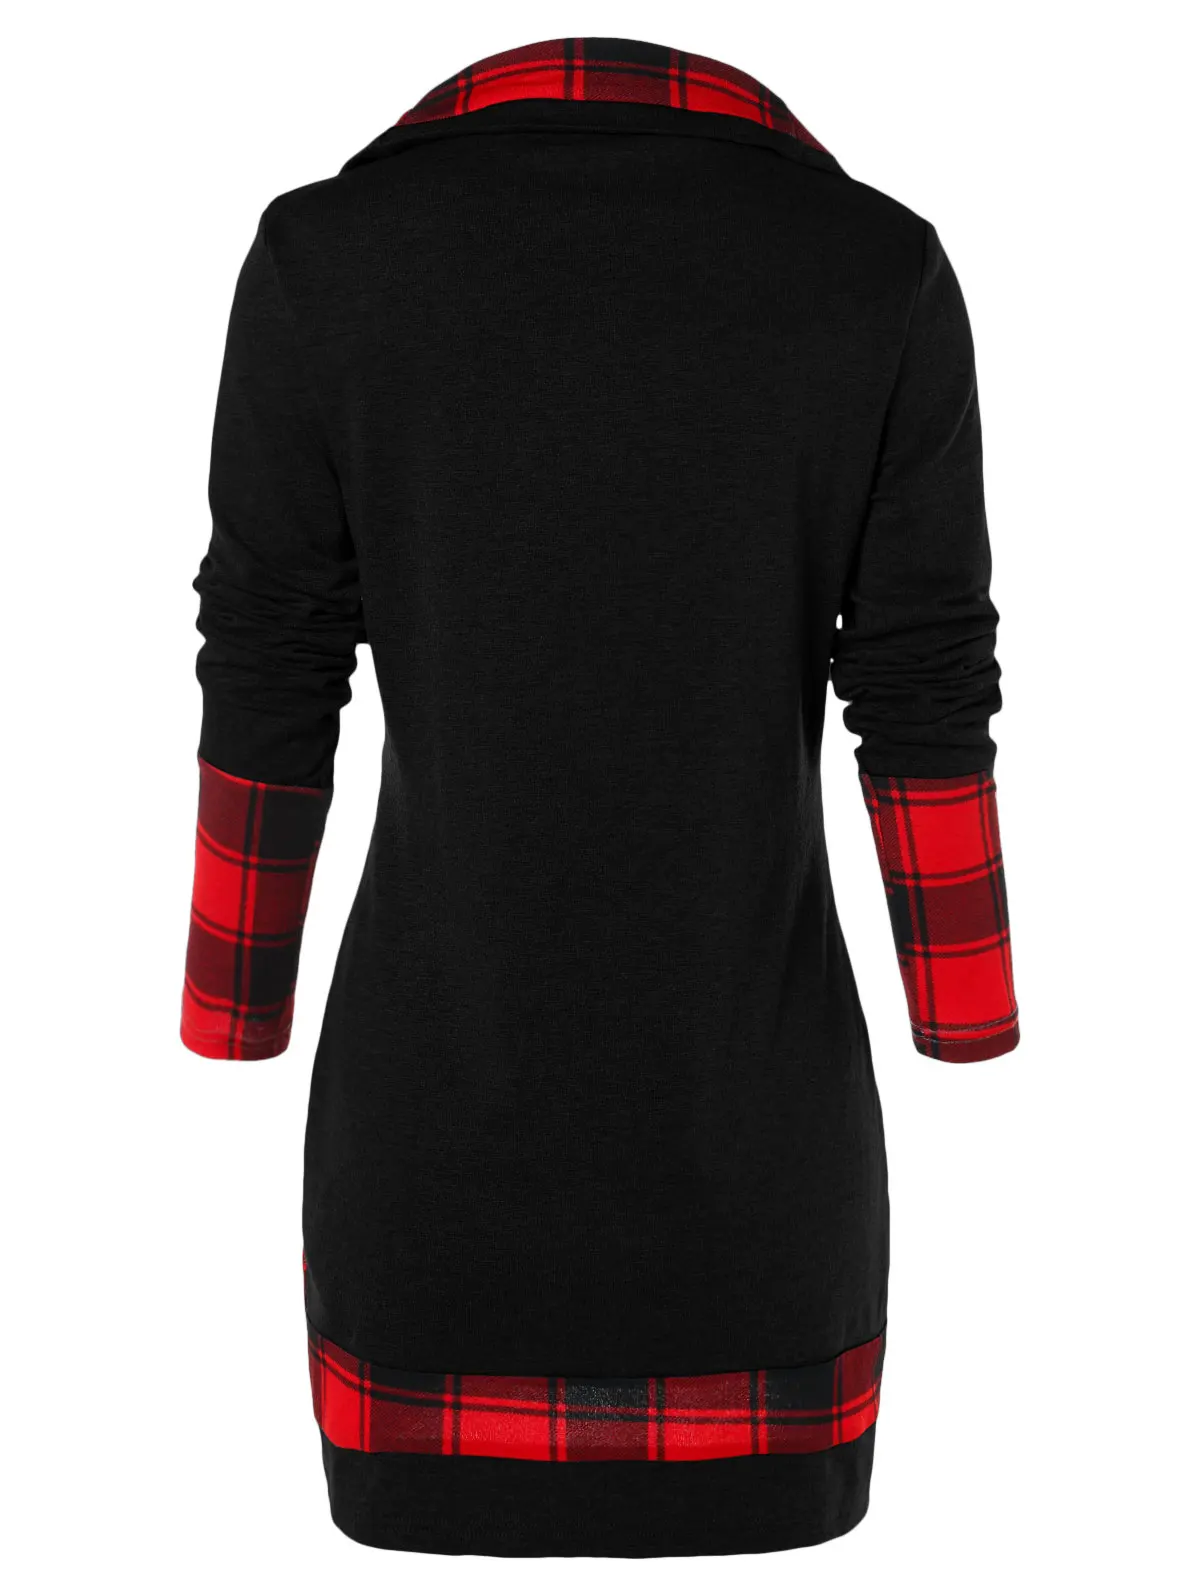 Rosegal плюс размеры для женщин футболка повседневное шотландская панель с длинным рукавом Асимметричный футболки дамы женские футболки осен